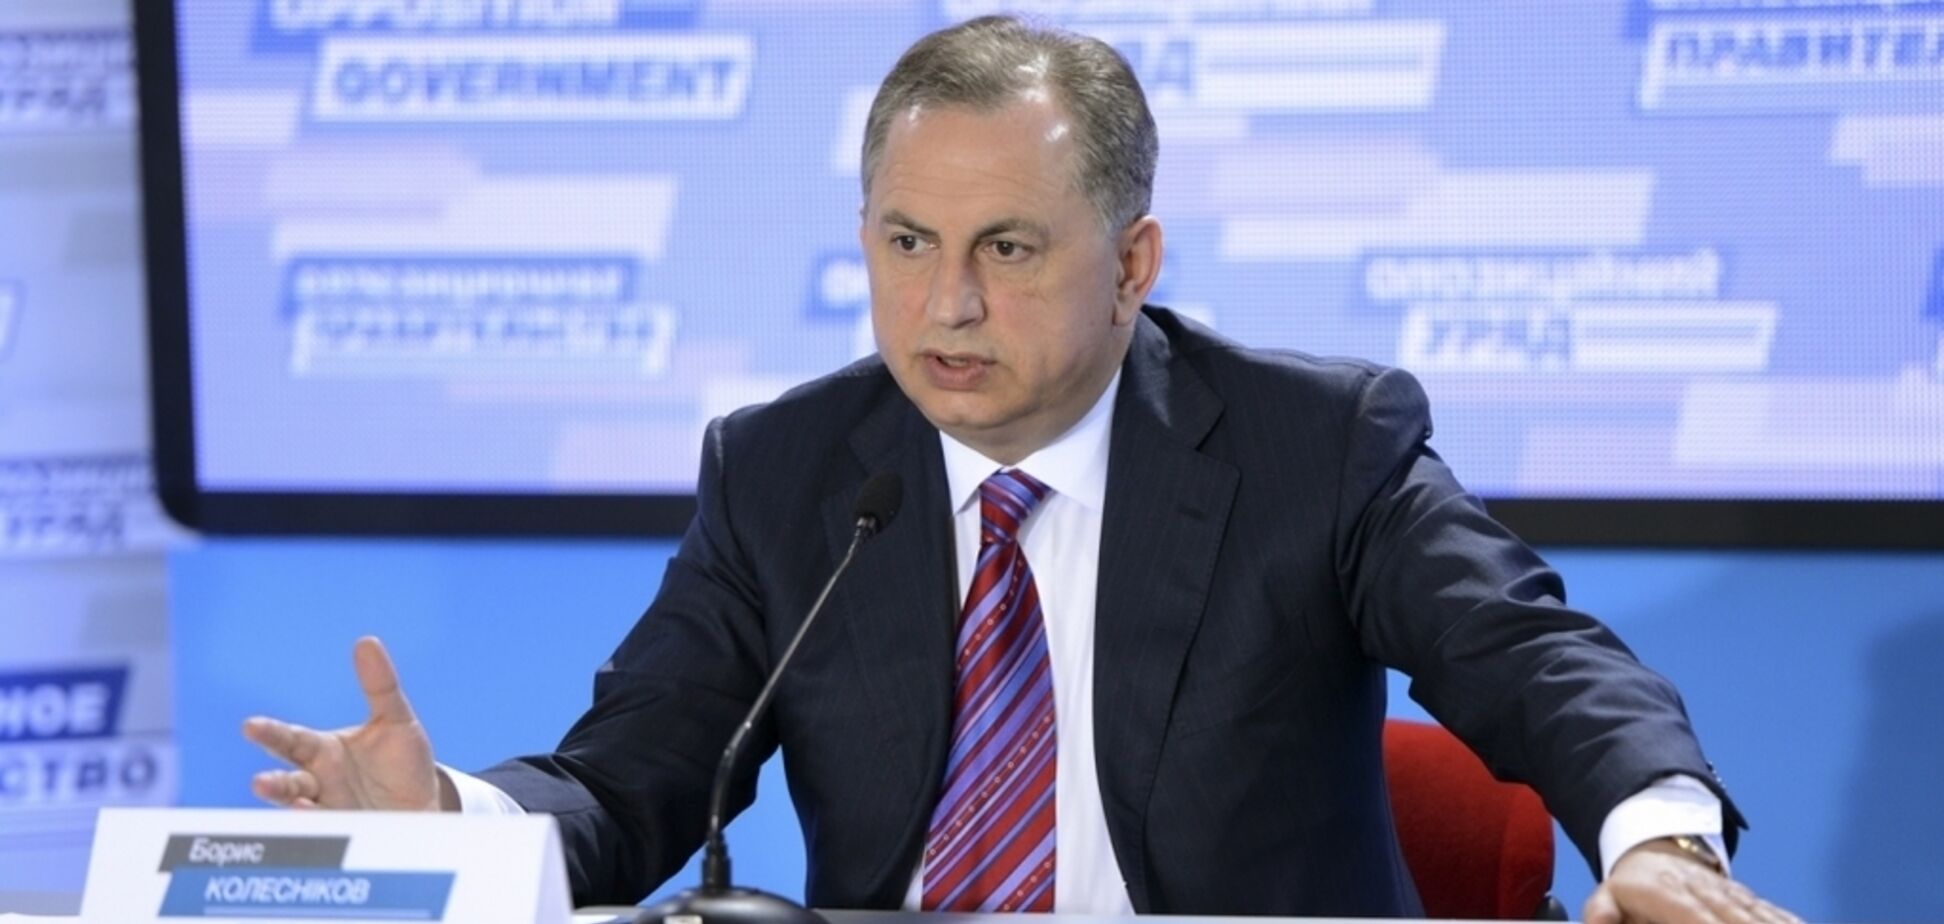 Колесніков вважає, що Україна не може розірвати залізничне сполучення з Росією